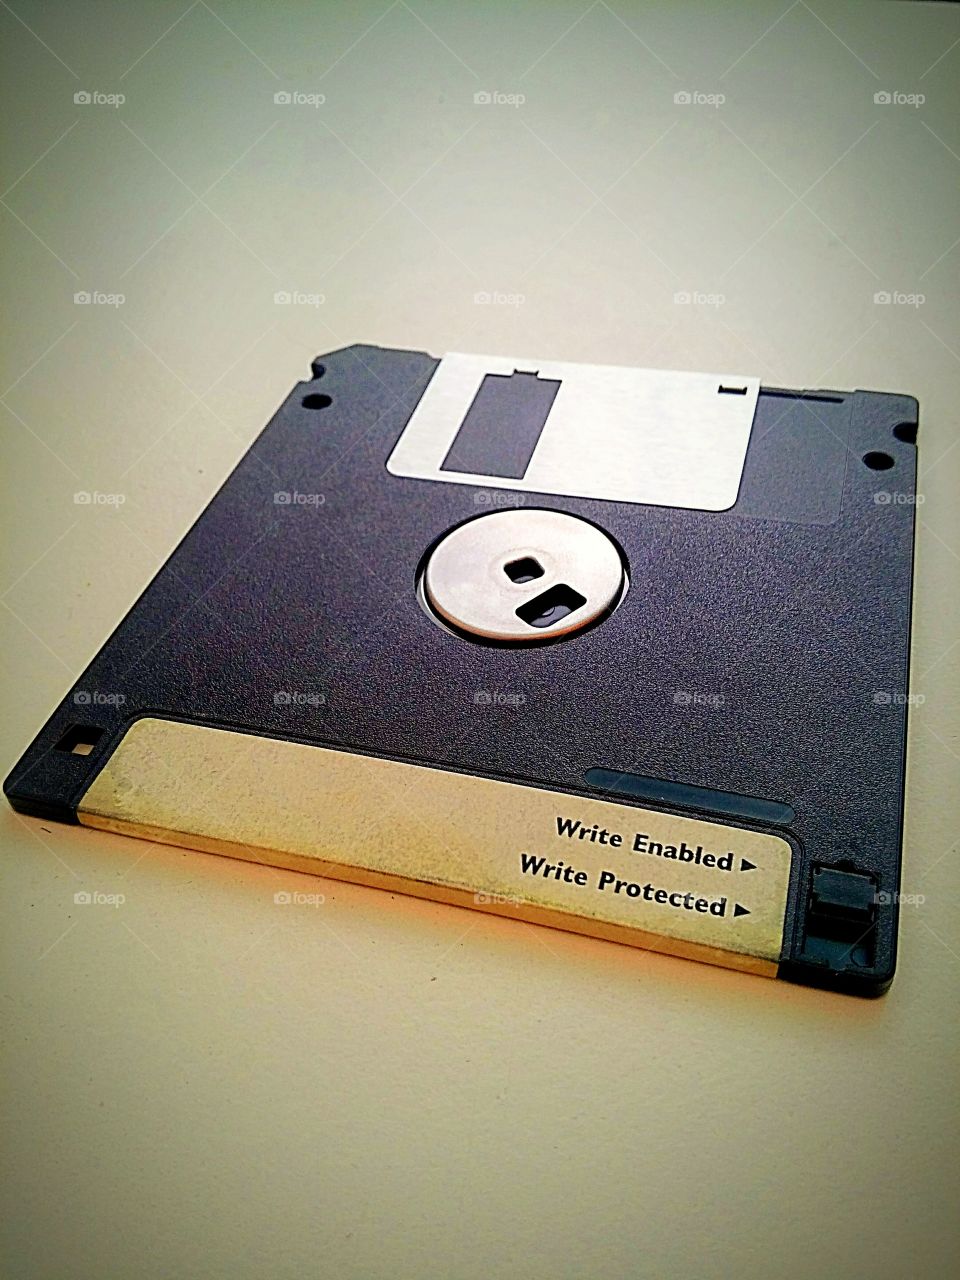 Floppy disk against white background